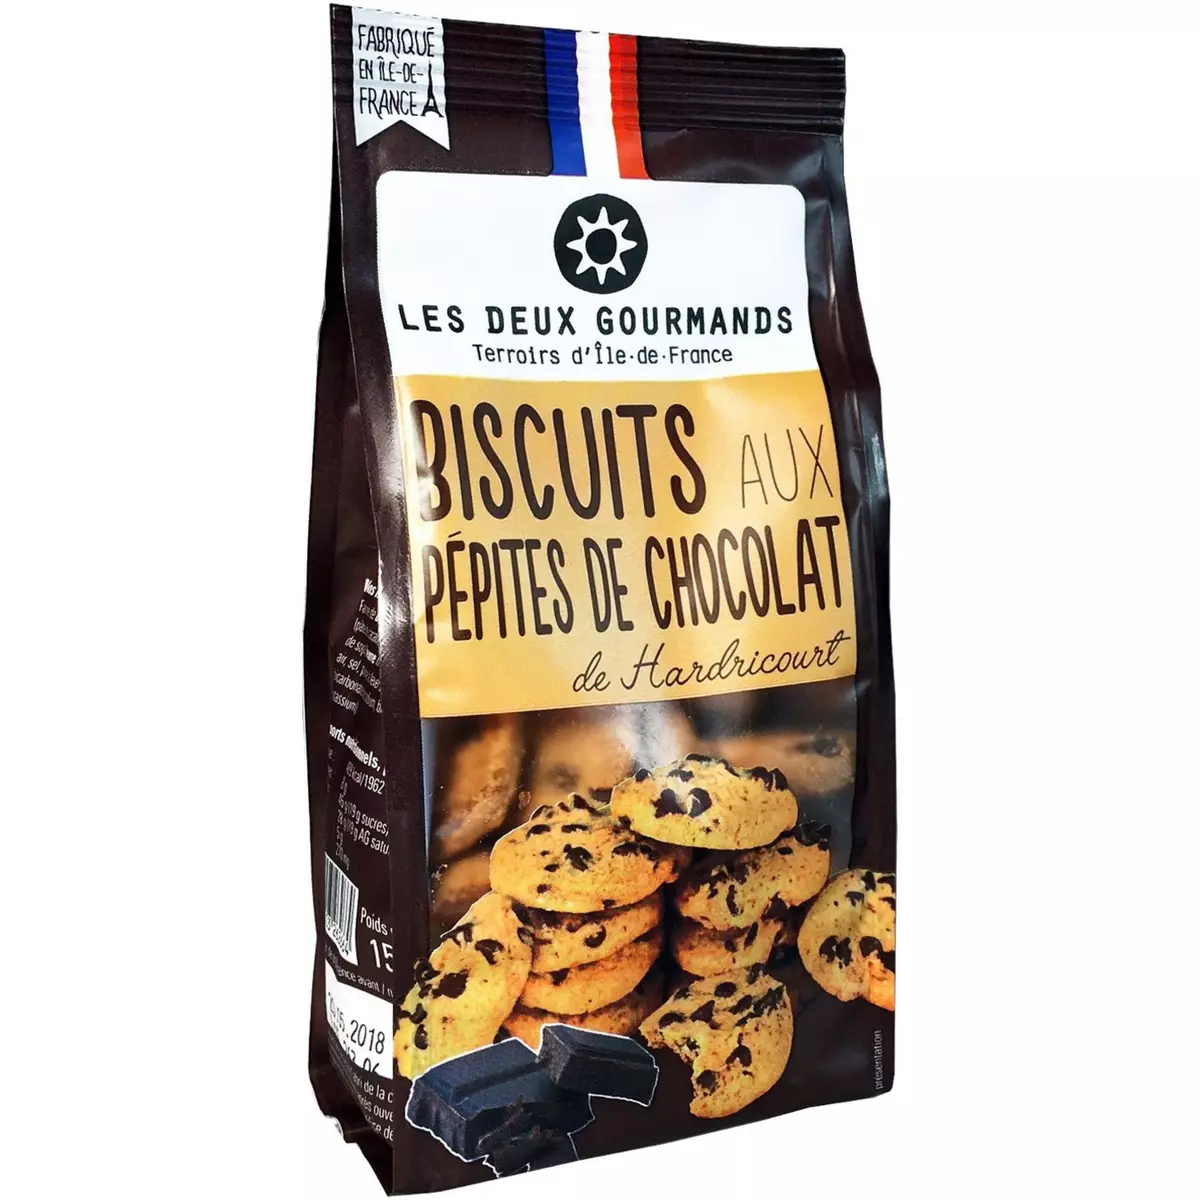 LES DEUX GOURMANDS Biscuits aux pépites de chocolat de Hardricourt 150g